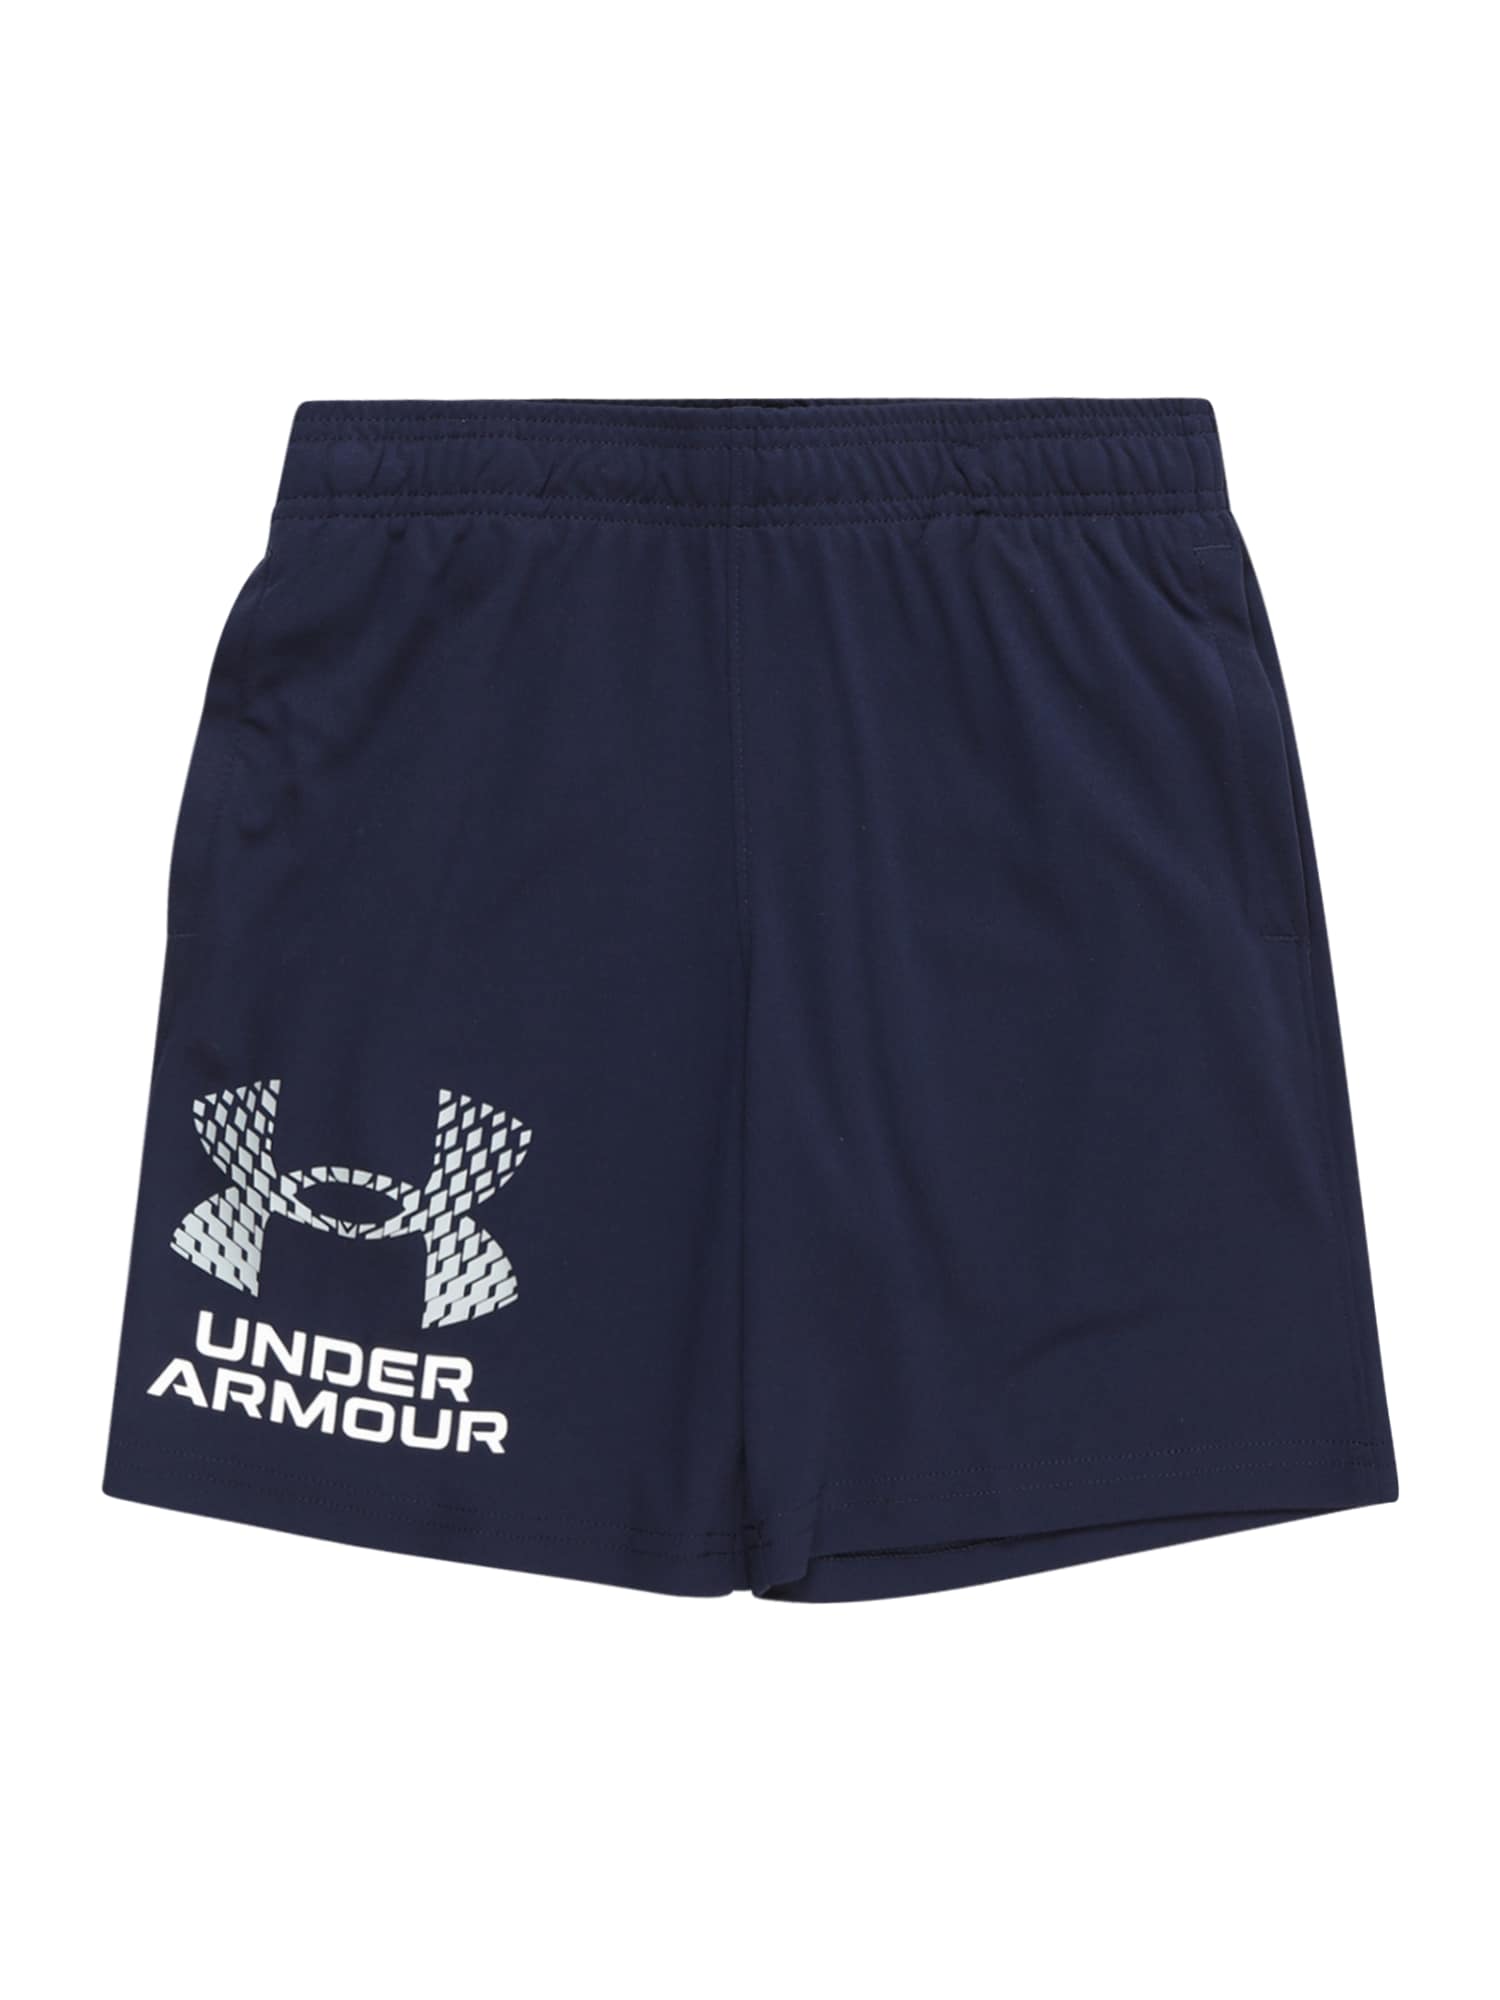 UNDER ARMOUR Sportinės kelnės tamsiai mėlyna / balkšva